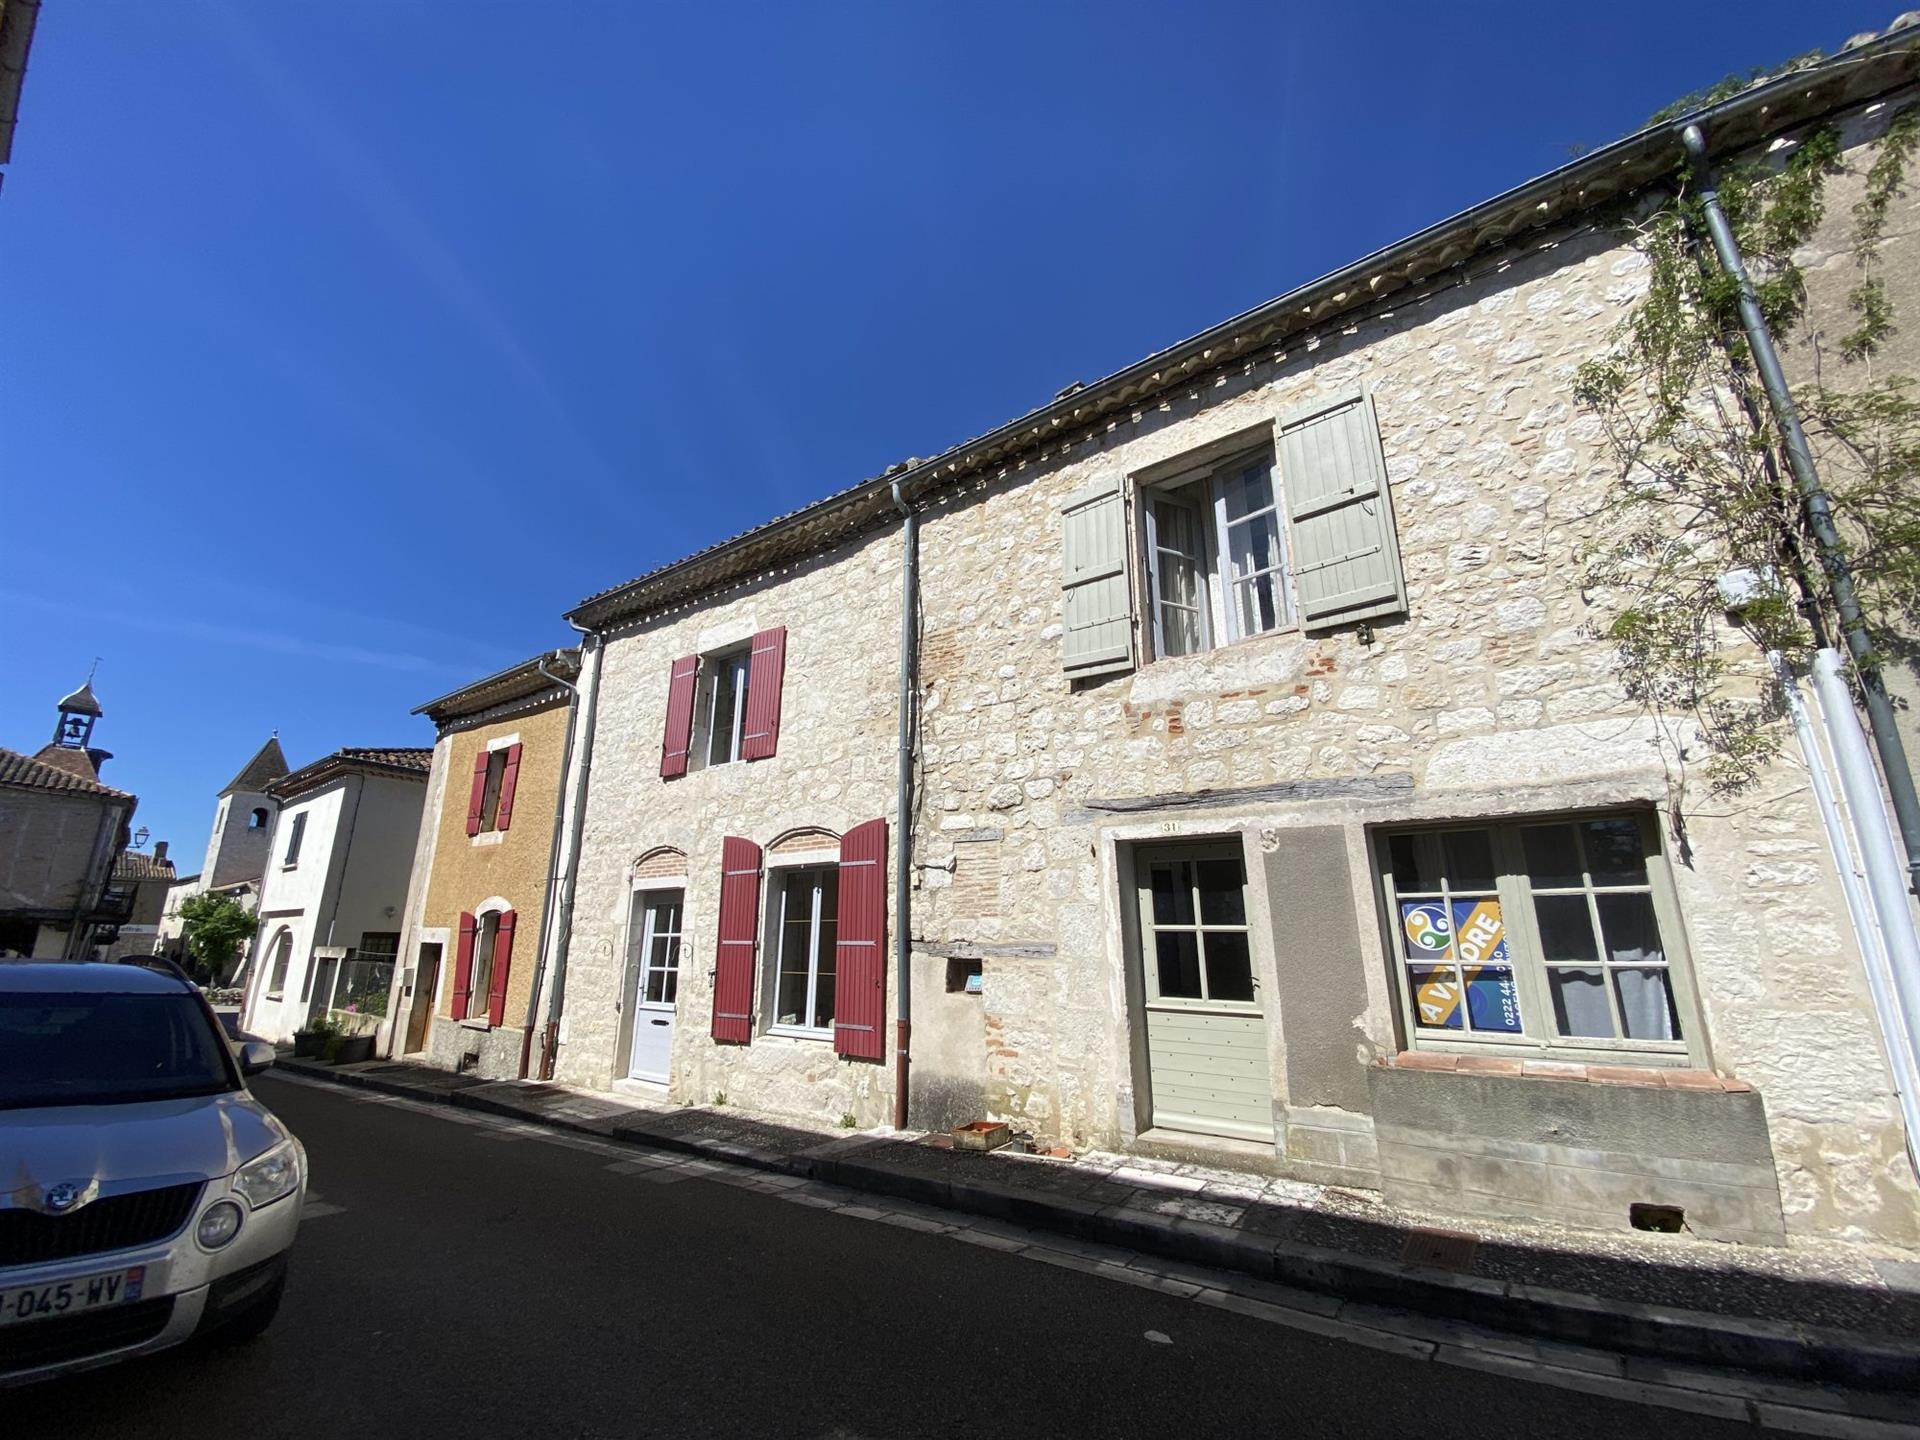  Lot Et Garonne Historisch dorpshuis met 3 bedden, op een steenworp afstand van het centrale plein